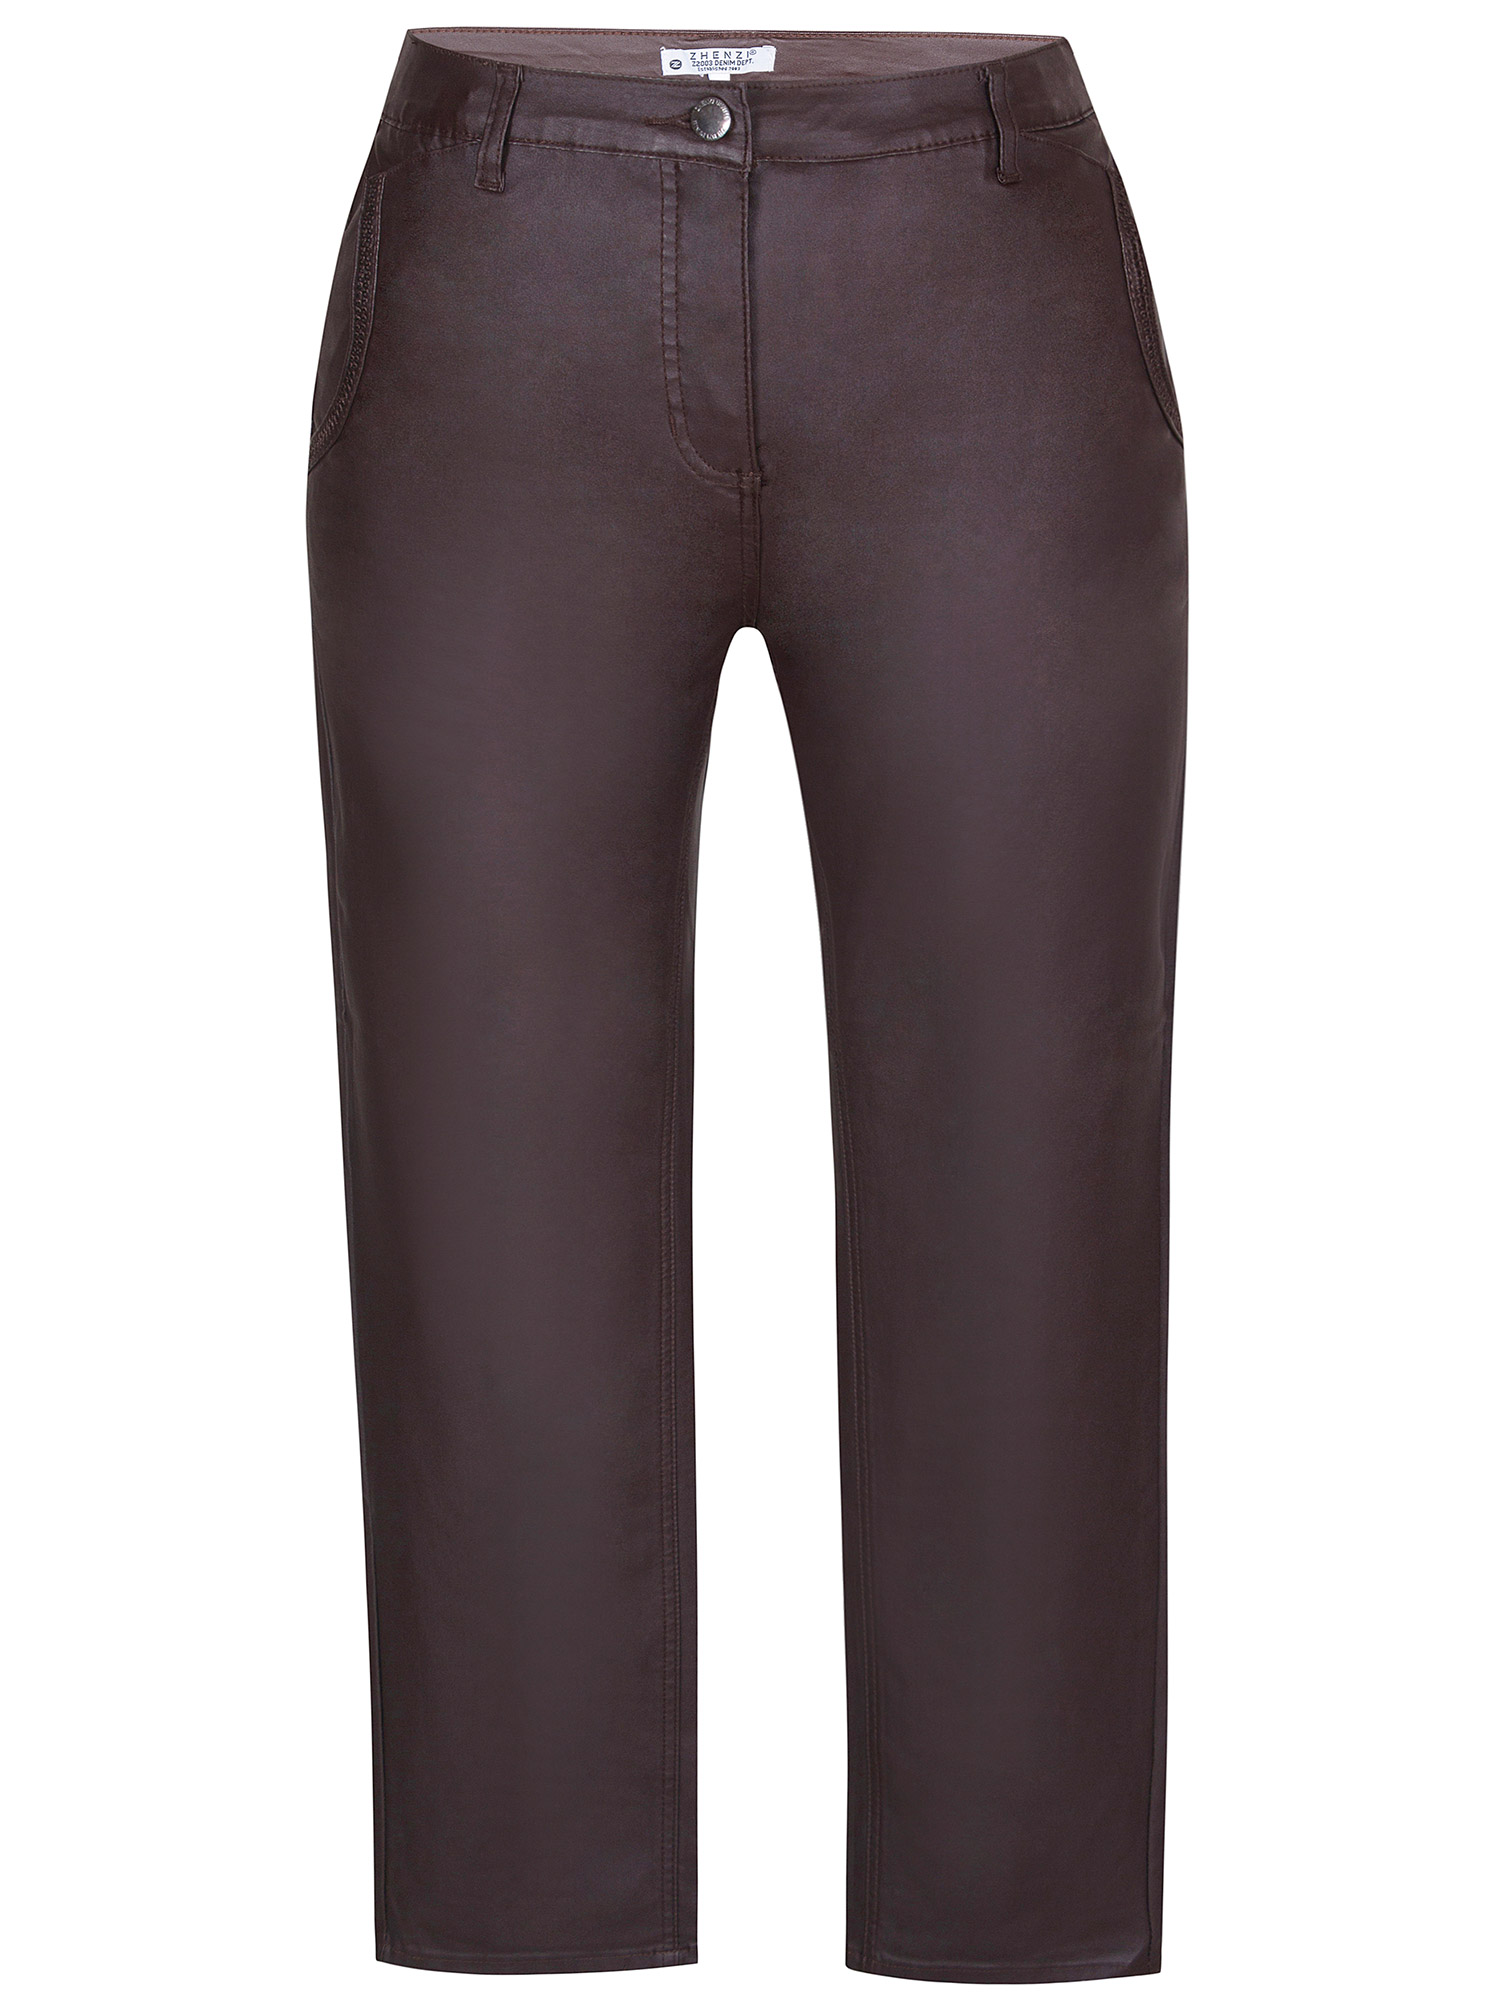 Salsa - brune stretch bukser i skinn look fra Zhenzi